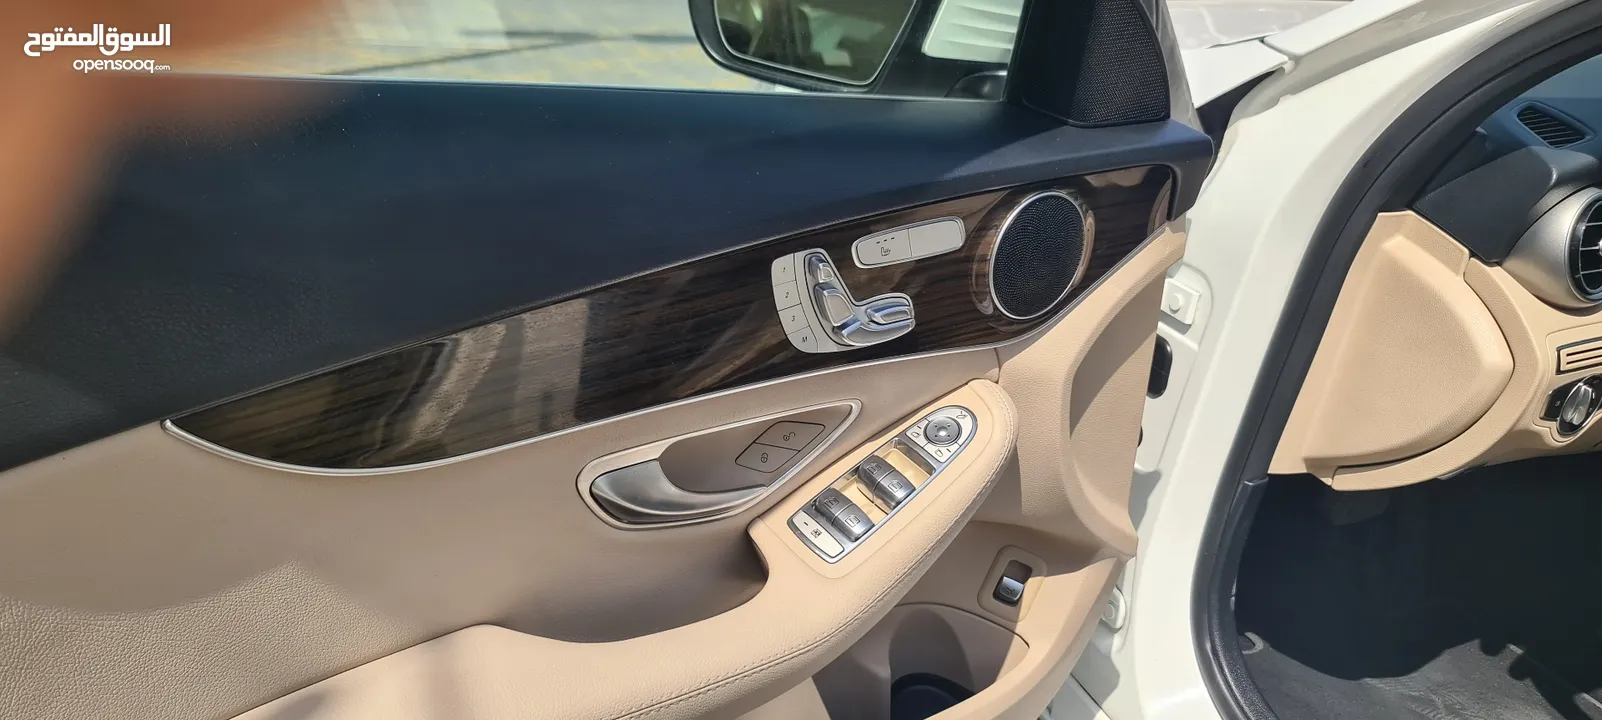 مرسيدس بنز C300 AMG موديل 2018 بحالة ممتازة